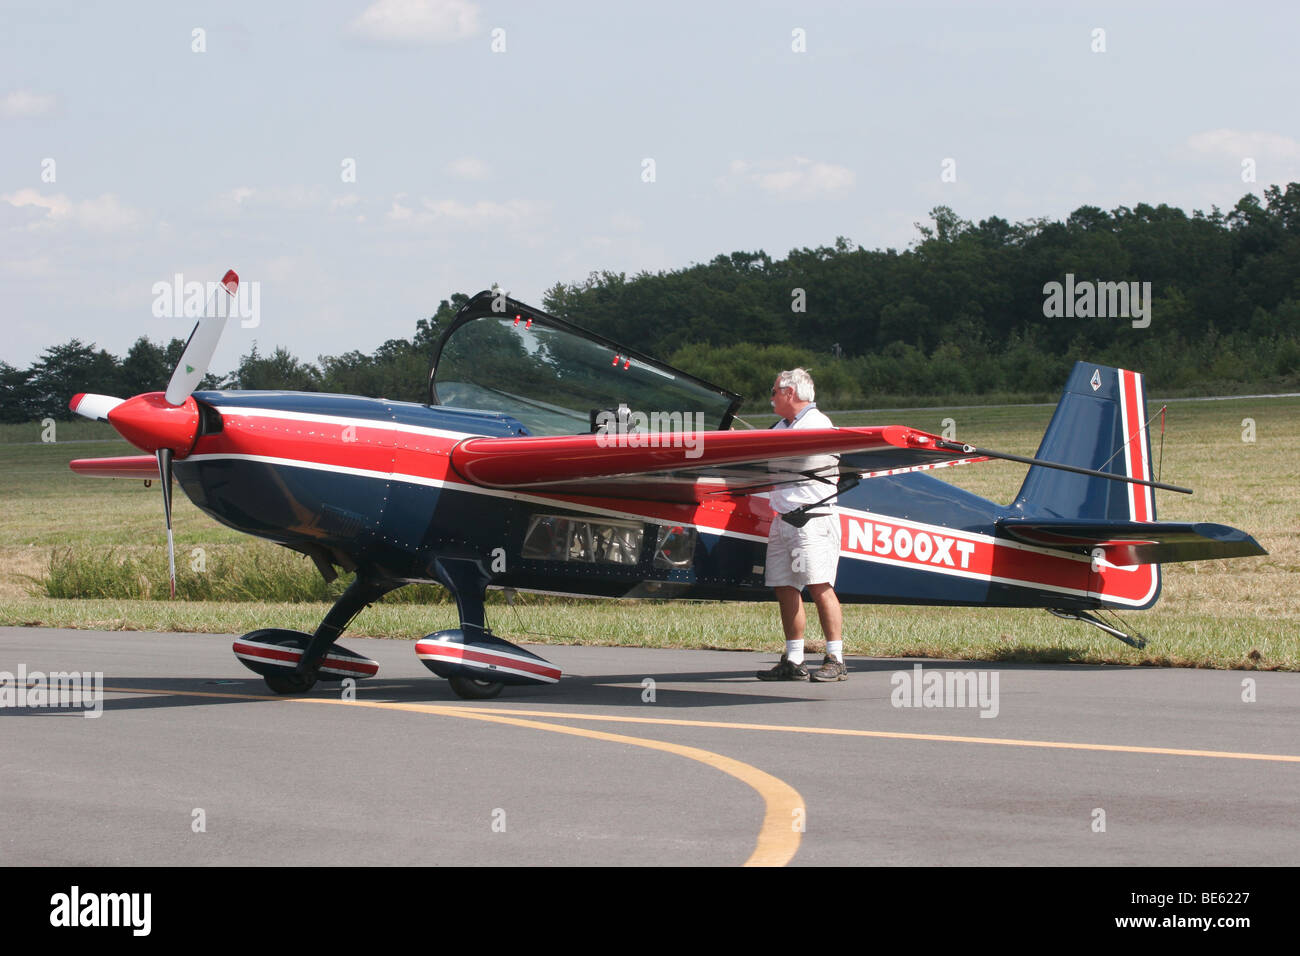 YAK-55 acrobatic airplane at Louisa, Virginia airshow Stock Photo